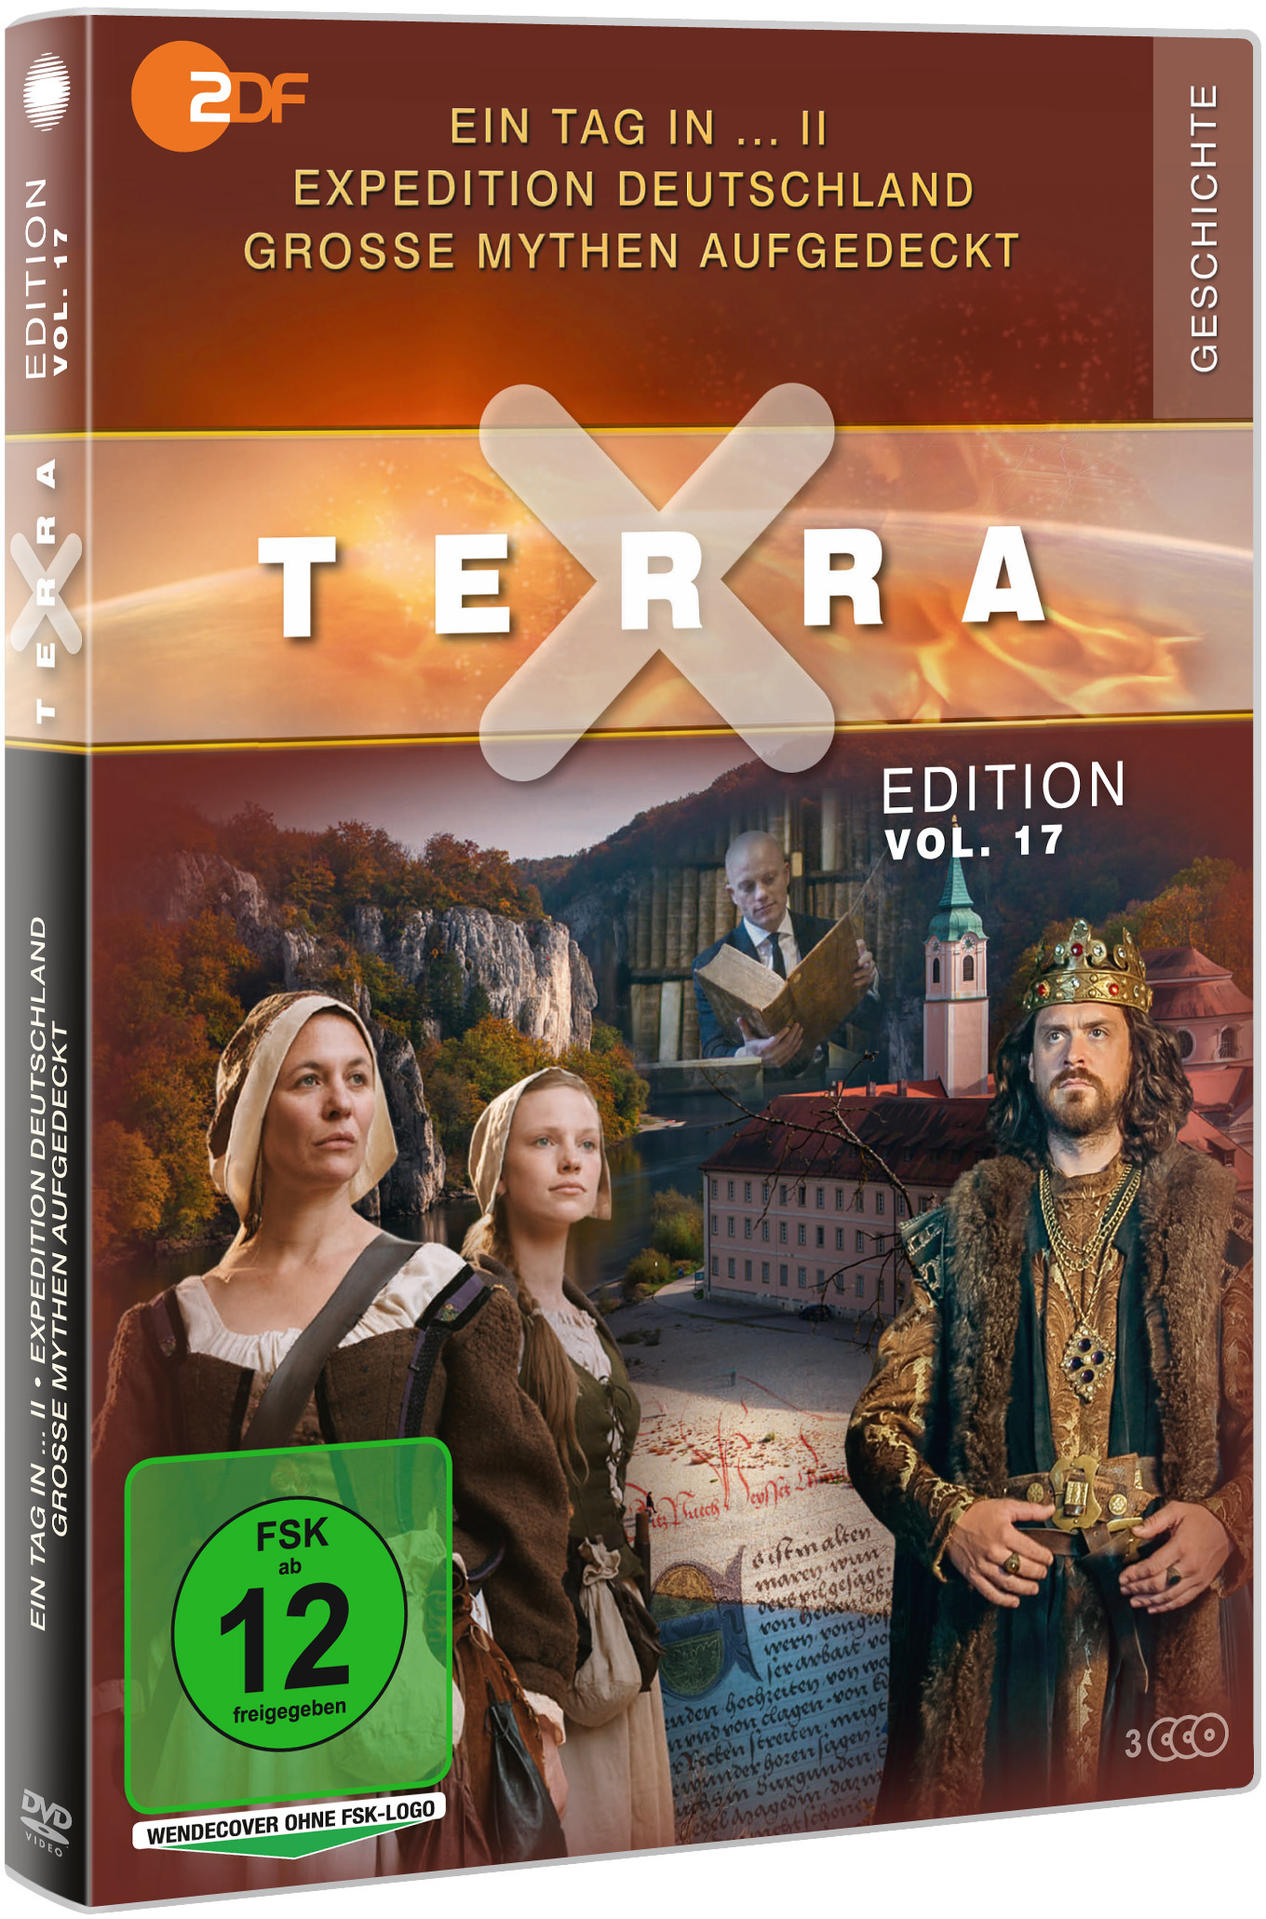 / Edition Ein DVD / II Tag aufgedeckt Vol. Mythen - Deutschland Expedition X Terra in … 17: Große